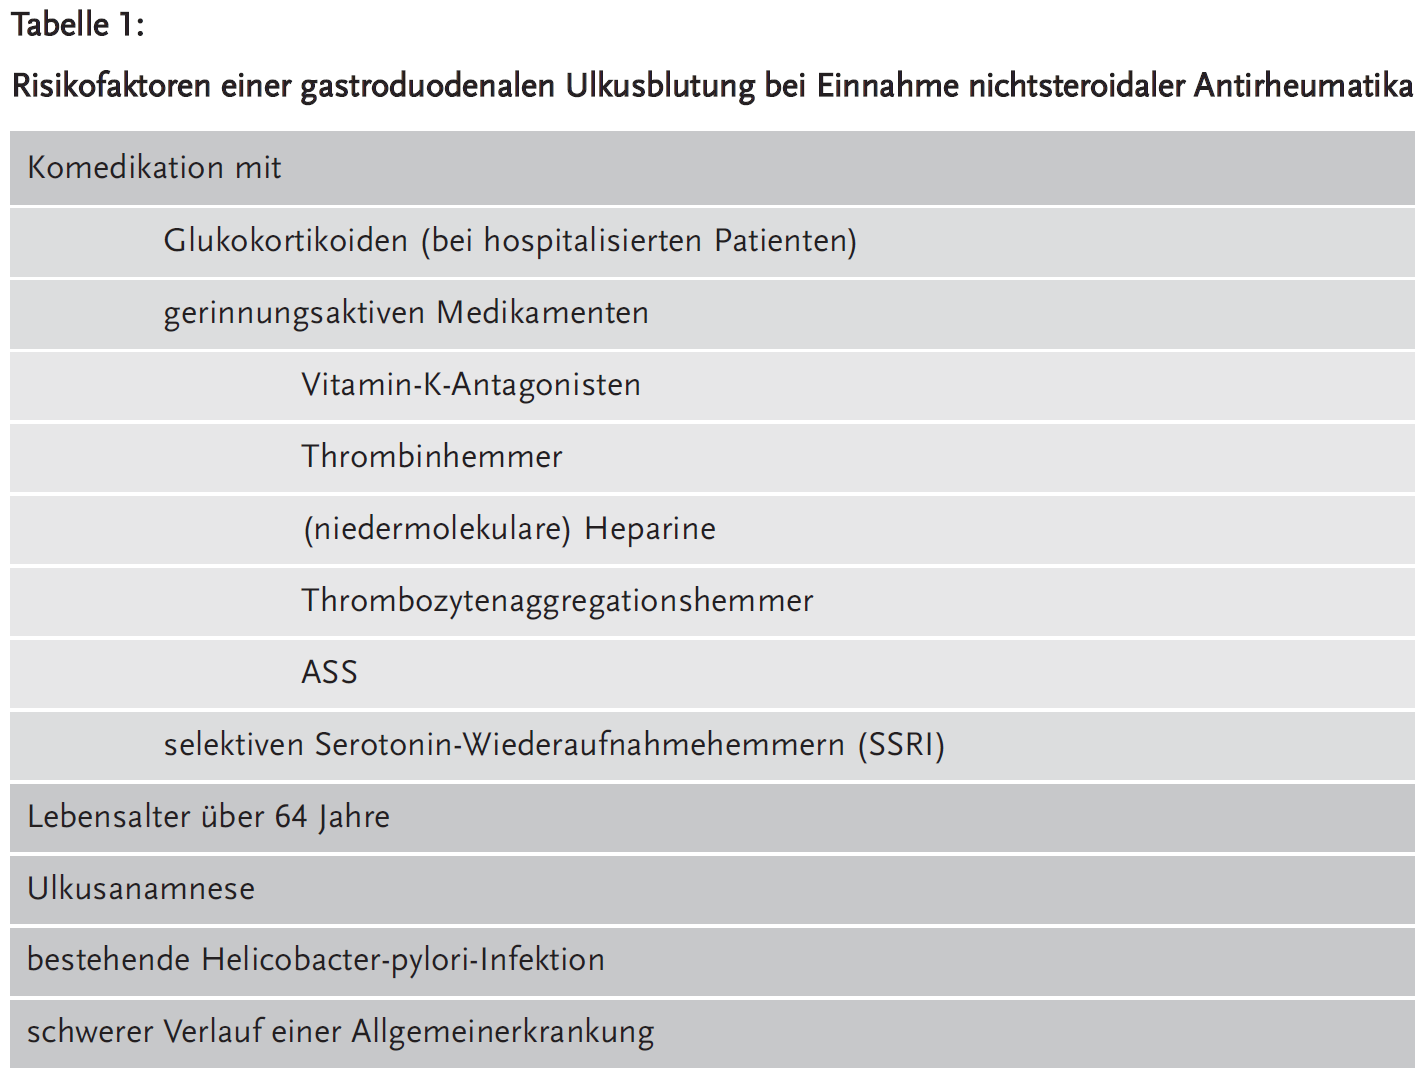 Tabelle 1: Risikofaktoren einer gastroduodenalen Ulkusblutung bei Einnahme nichtsteroidaler Antirheumatika